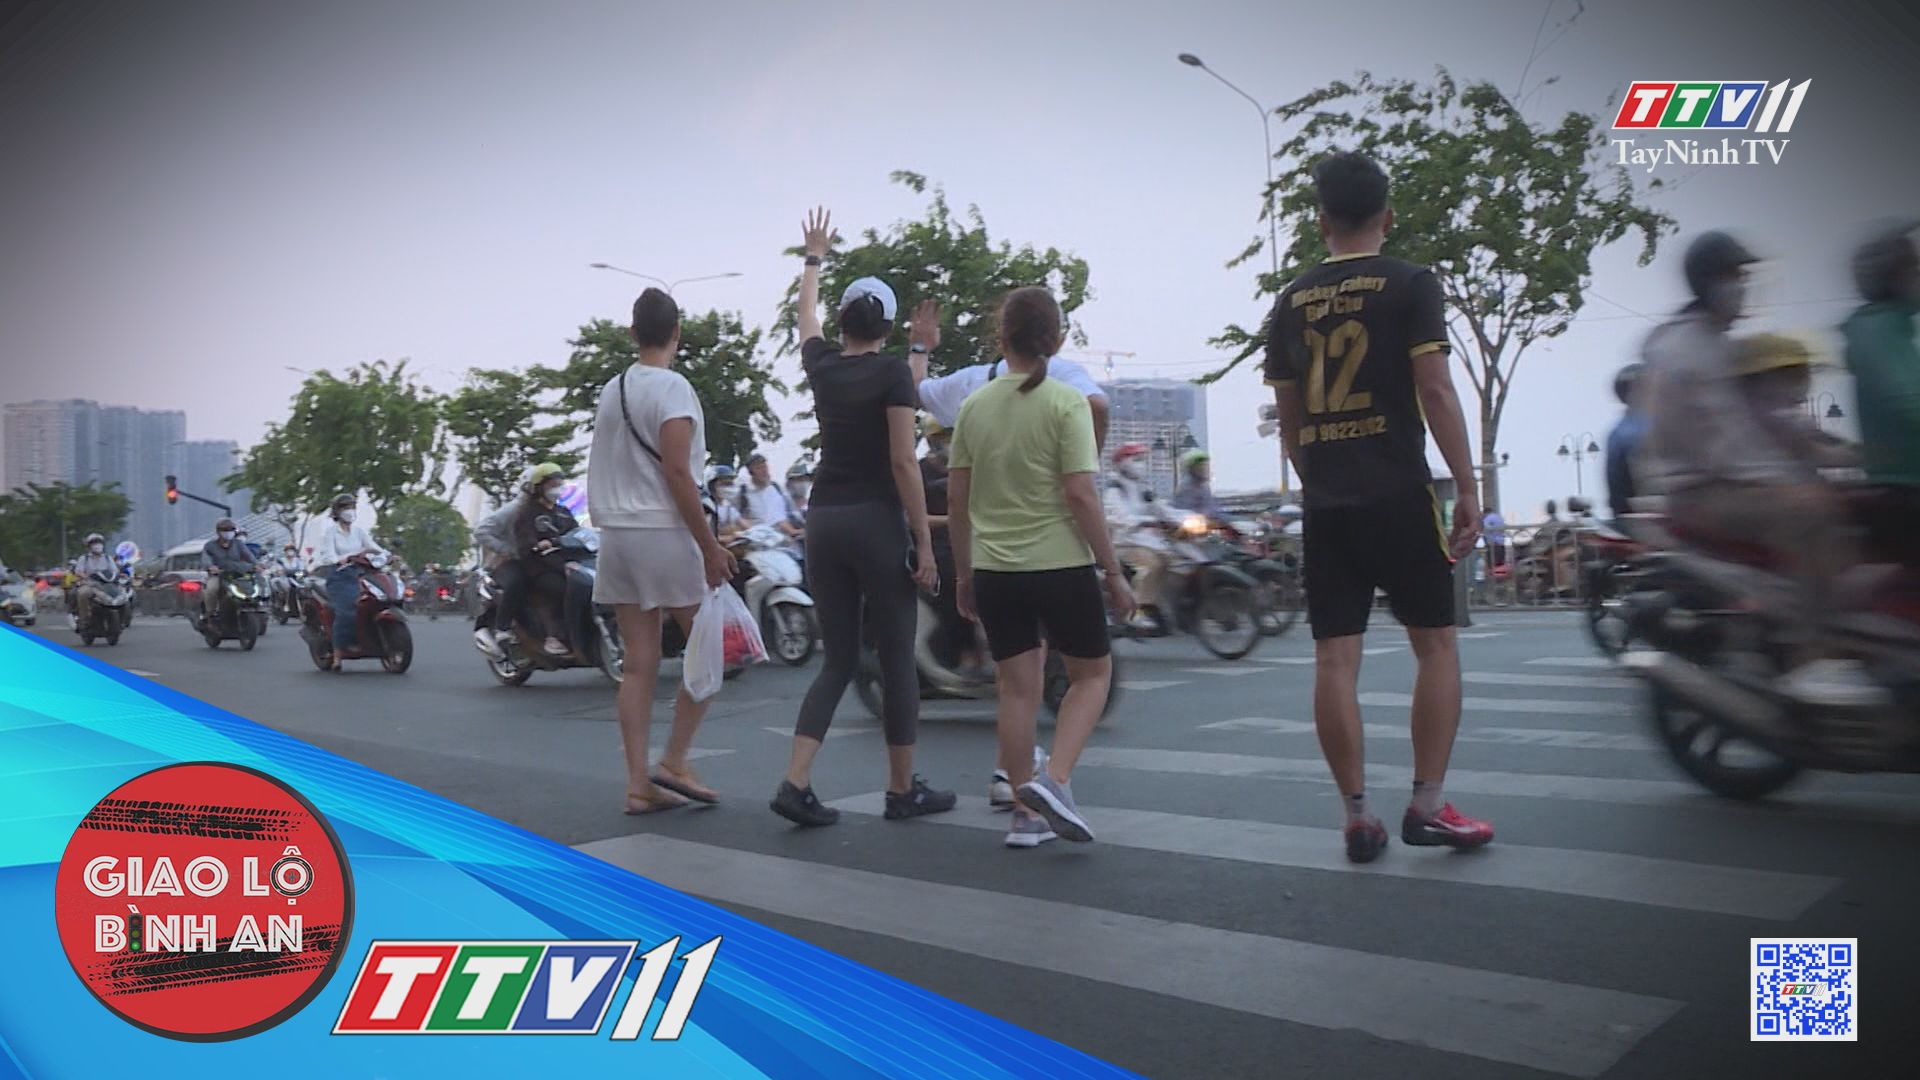 Cầu vượt cho người đi bộ: chỗ thiếu, chỗ bỏ không | Giao lộ bình an | TayNinhTV